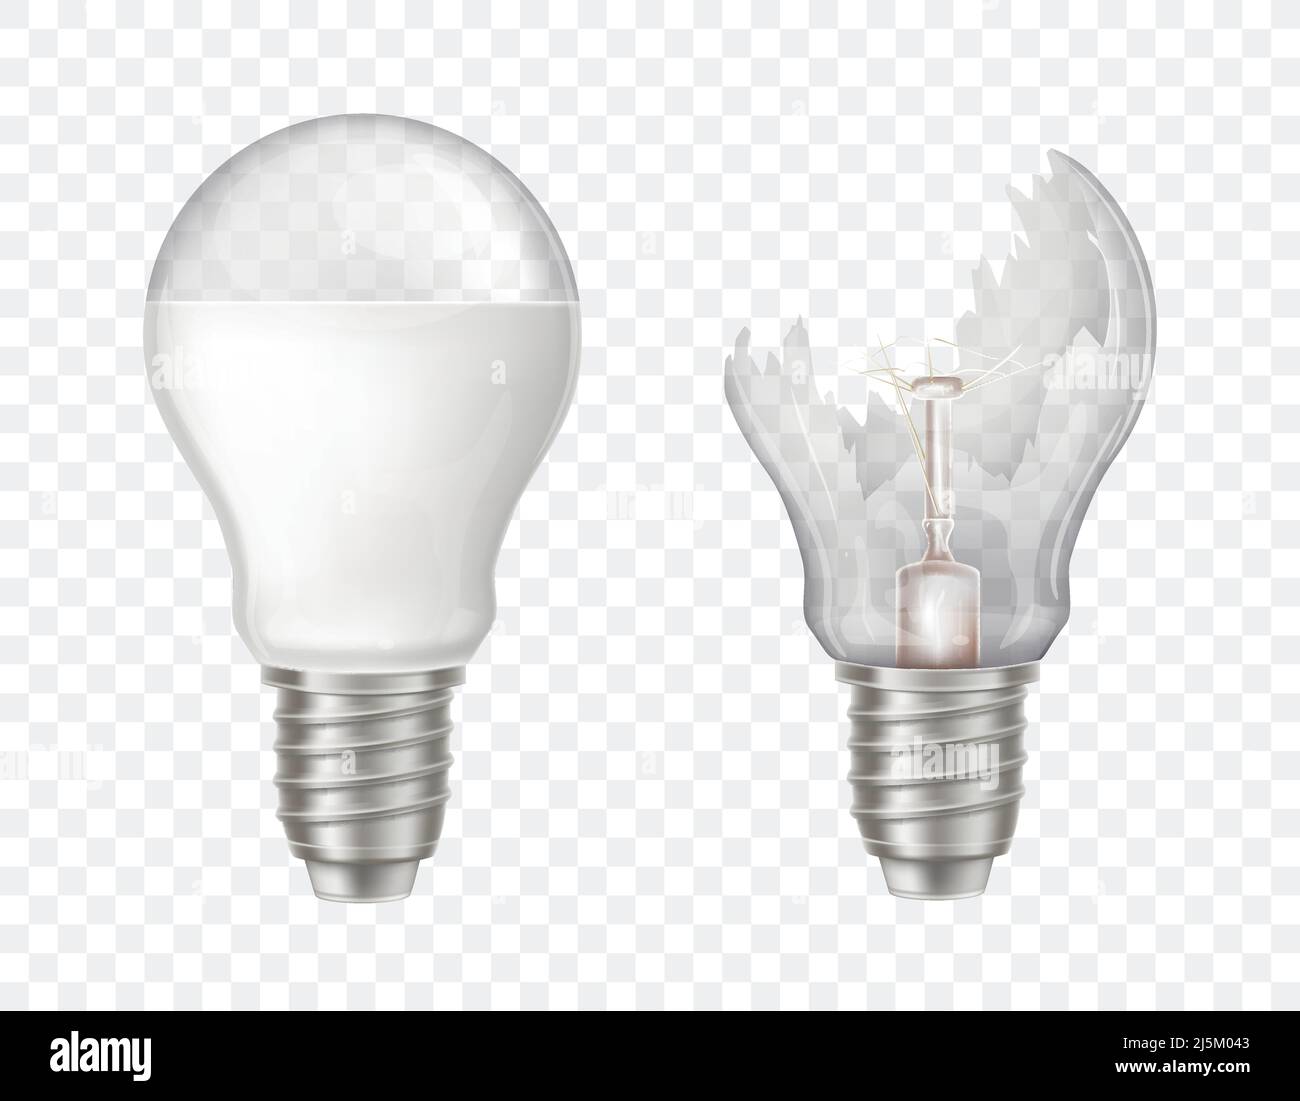 Vector 3D realistische elektrische Glühlampen. LED-Technologie, umweltfreundliche, energieeffiziente Innovation. Beleuchtungsanlage mit gebrochenem Glas, scharfer sp Stock Vektor